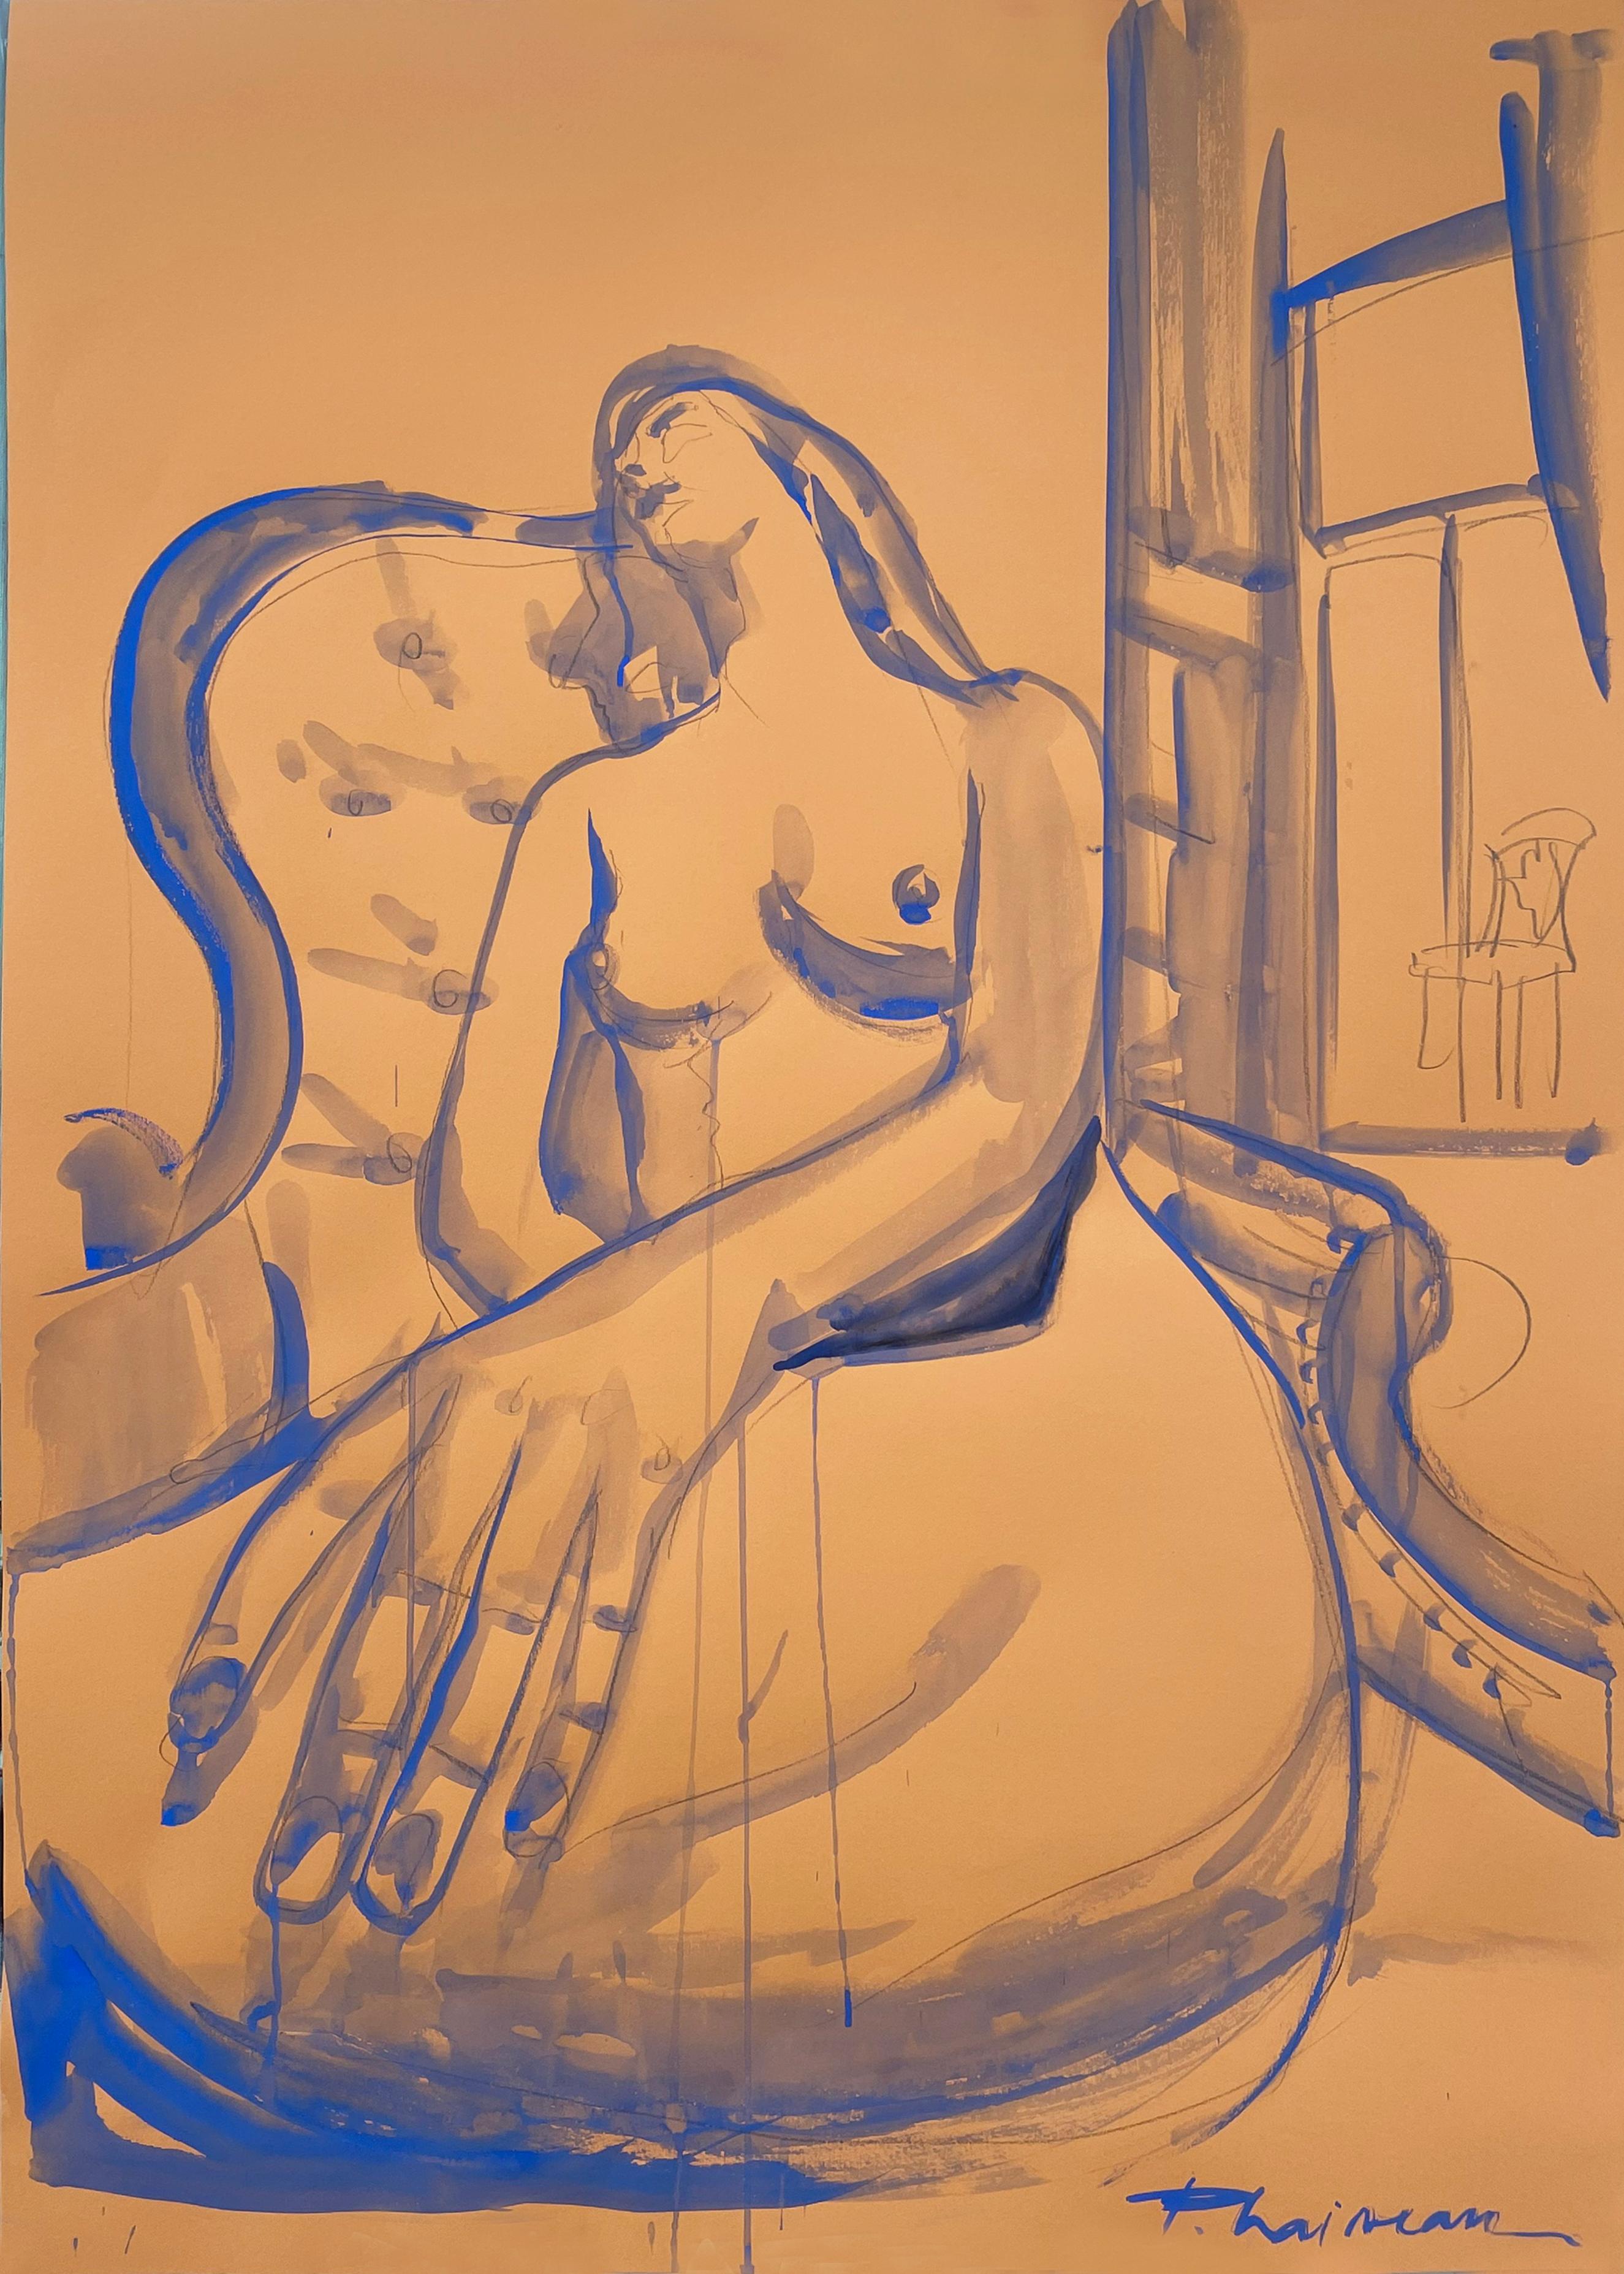 Träumen, Bleistift und ultramarinblaue Tempera auf Papier, inspiriert von Matisse.
Teil der Serie Nude in Interior.
Akt in einem viktorianischen Interieur, in einer filmischen Ansicht. In einer verzerrten Perspektive.

Große Zeichnung. Wird in einer